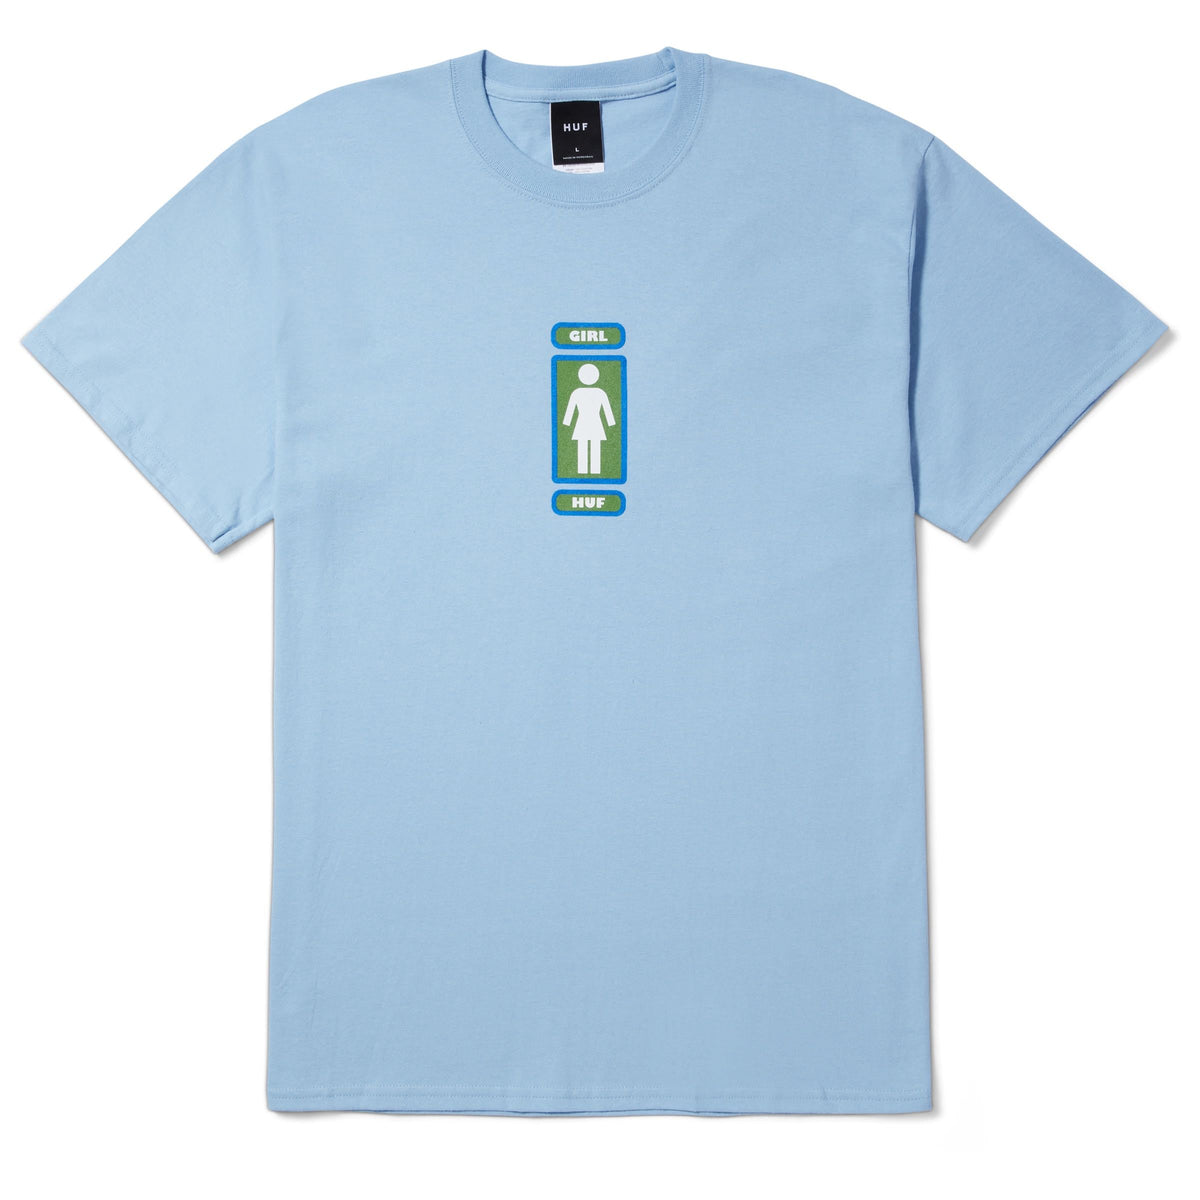 HUF x Girl Skateboards Springwood T-Shirt - Light Blue